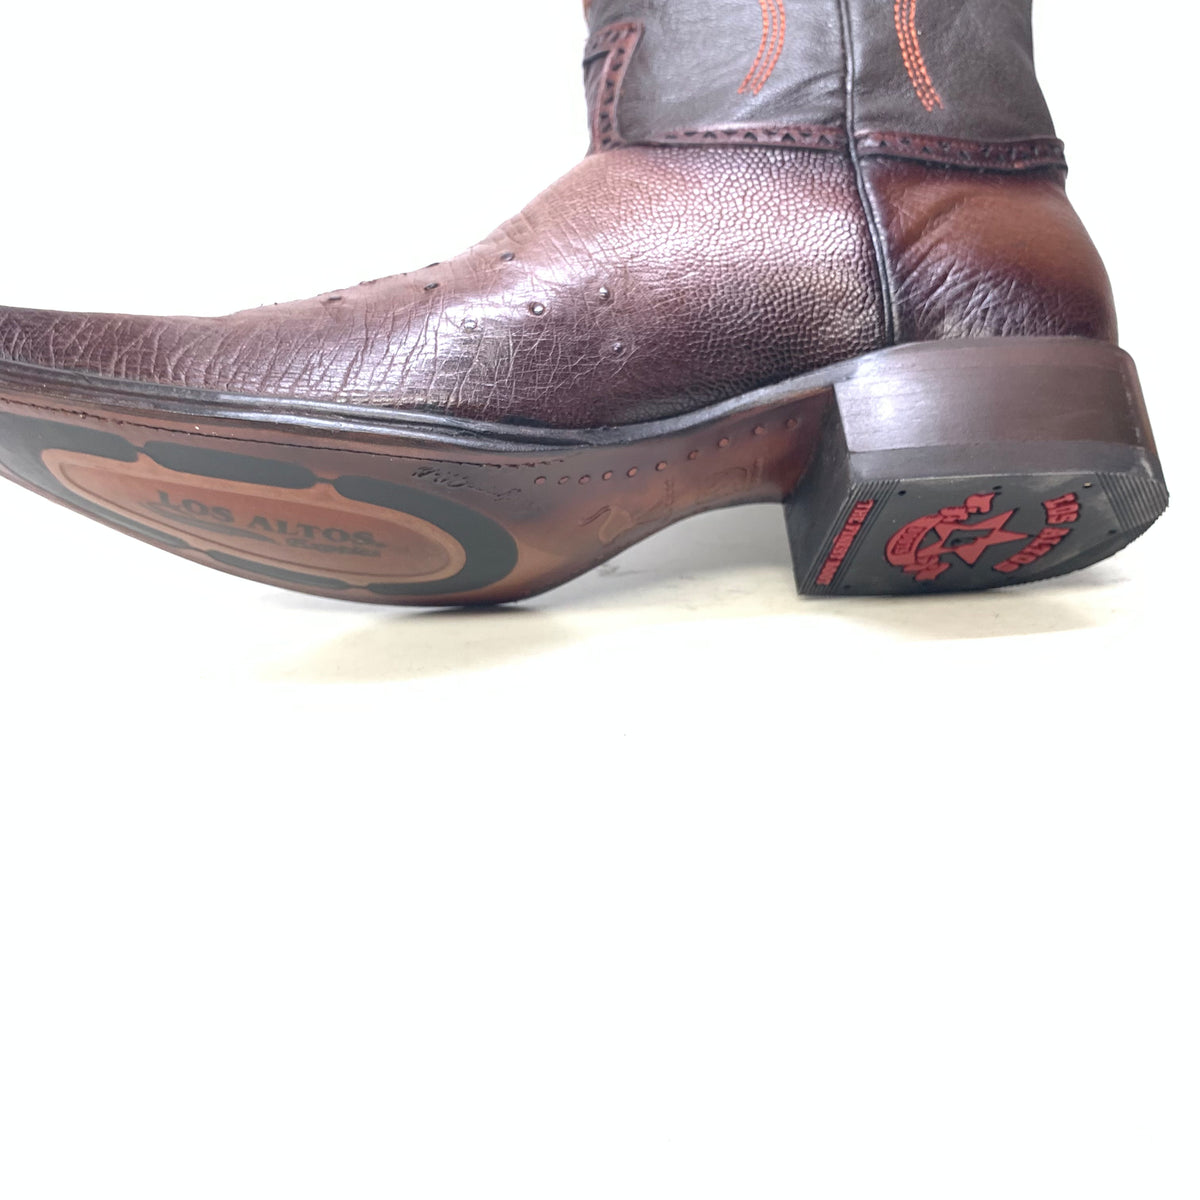 Los Altos Boots Brown Ostrich Quill Cowboy Boots - Dudes Boutique